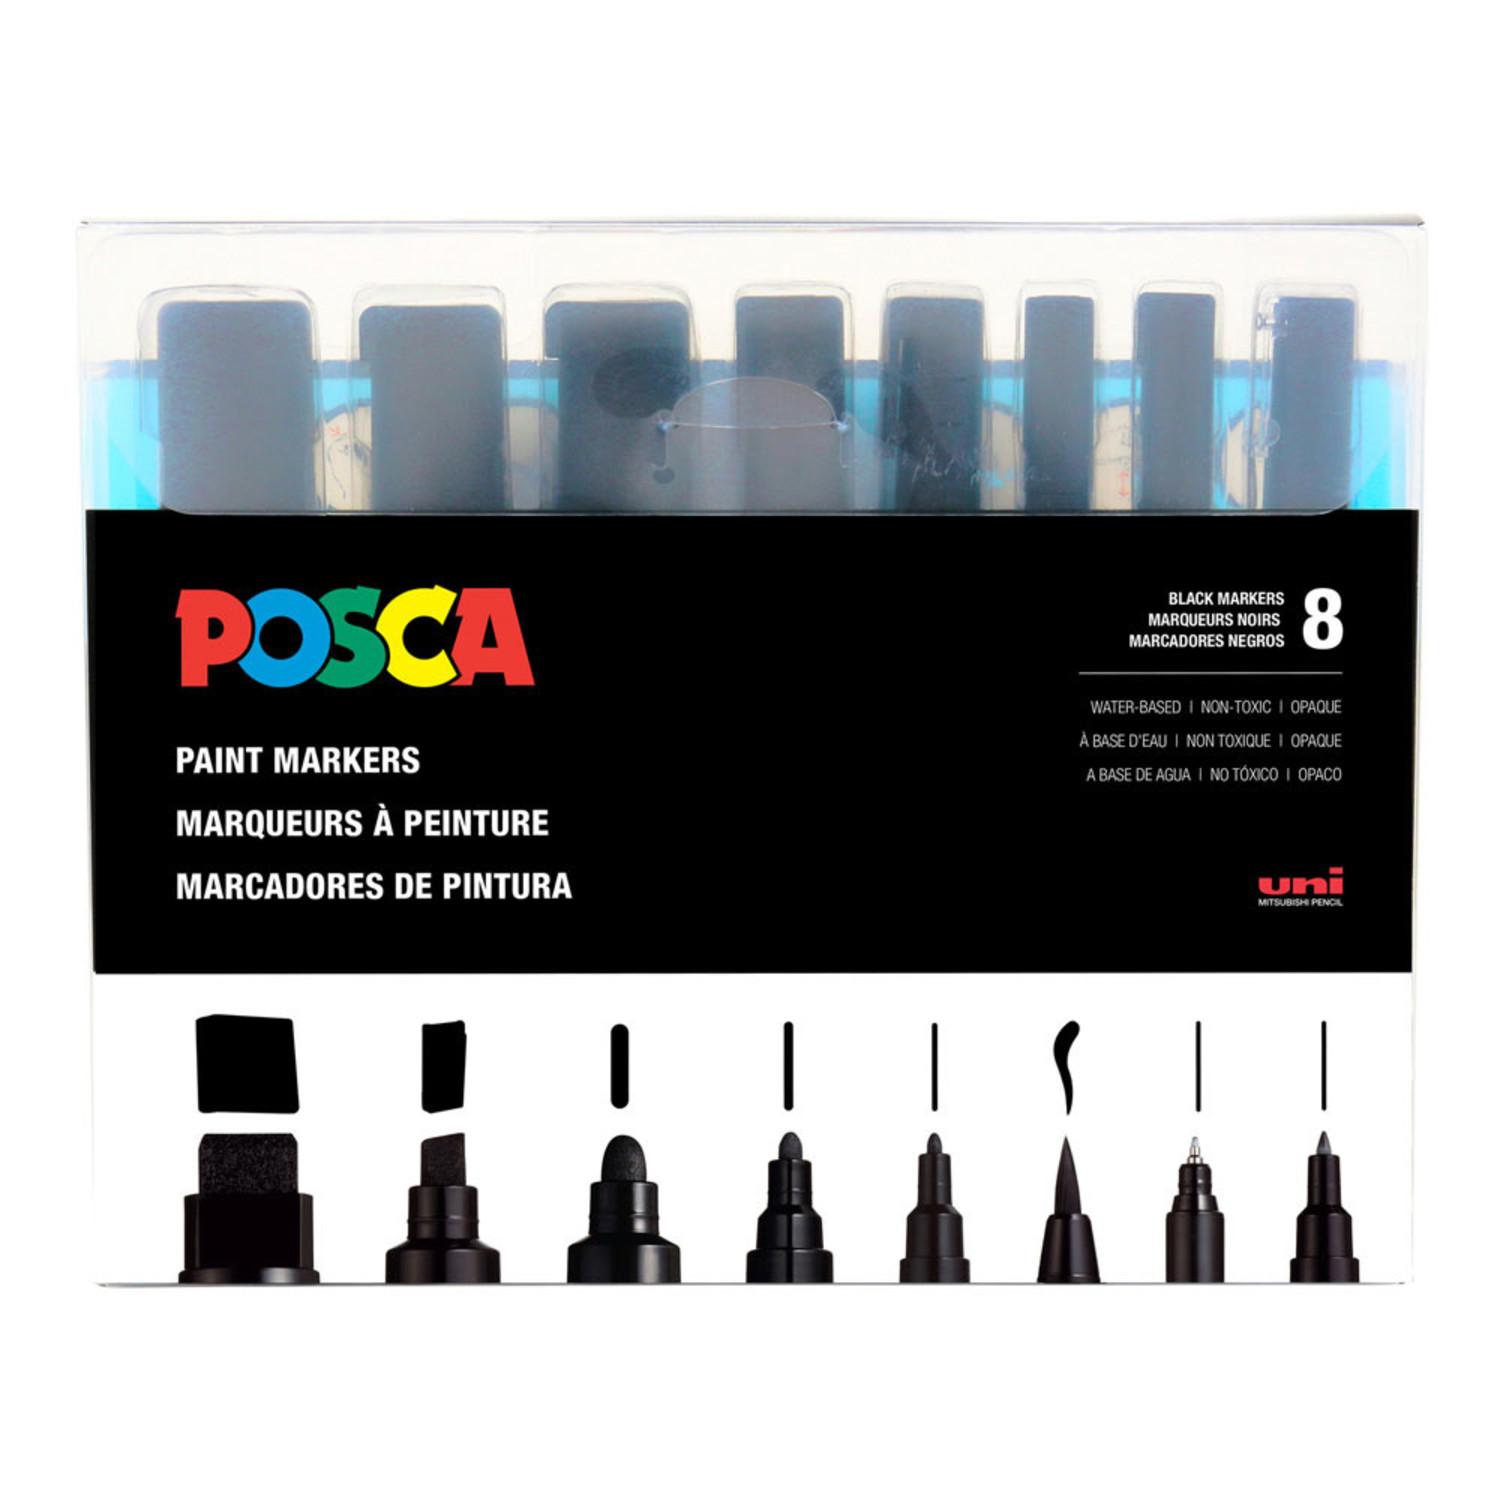 UNI POSCA Paint Pens Art Markers - PC-1M PC-1MR PC-3M PC-5M PC-8K PC-17K  PCF-350